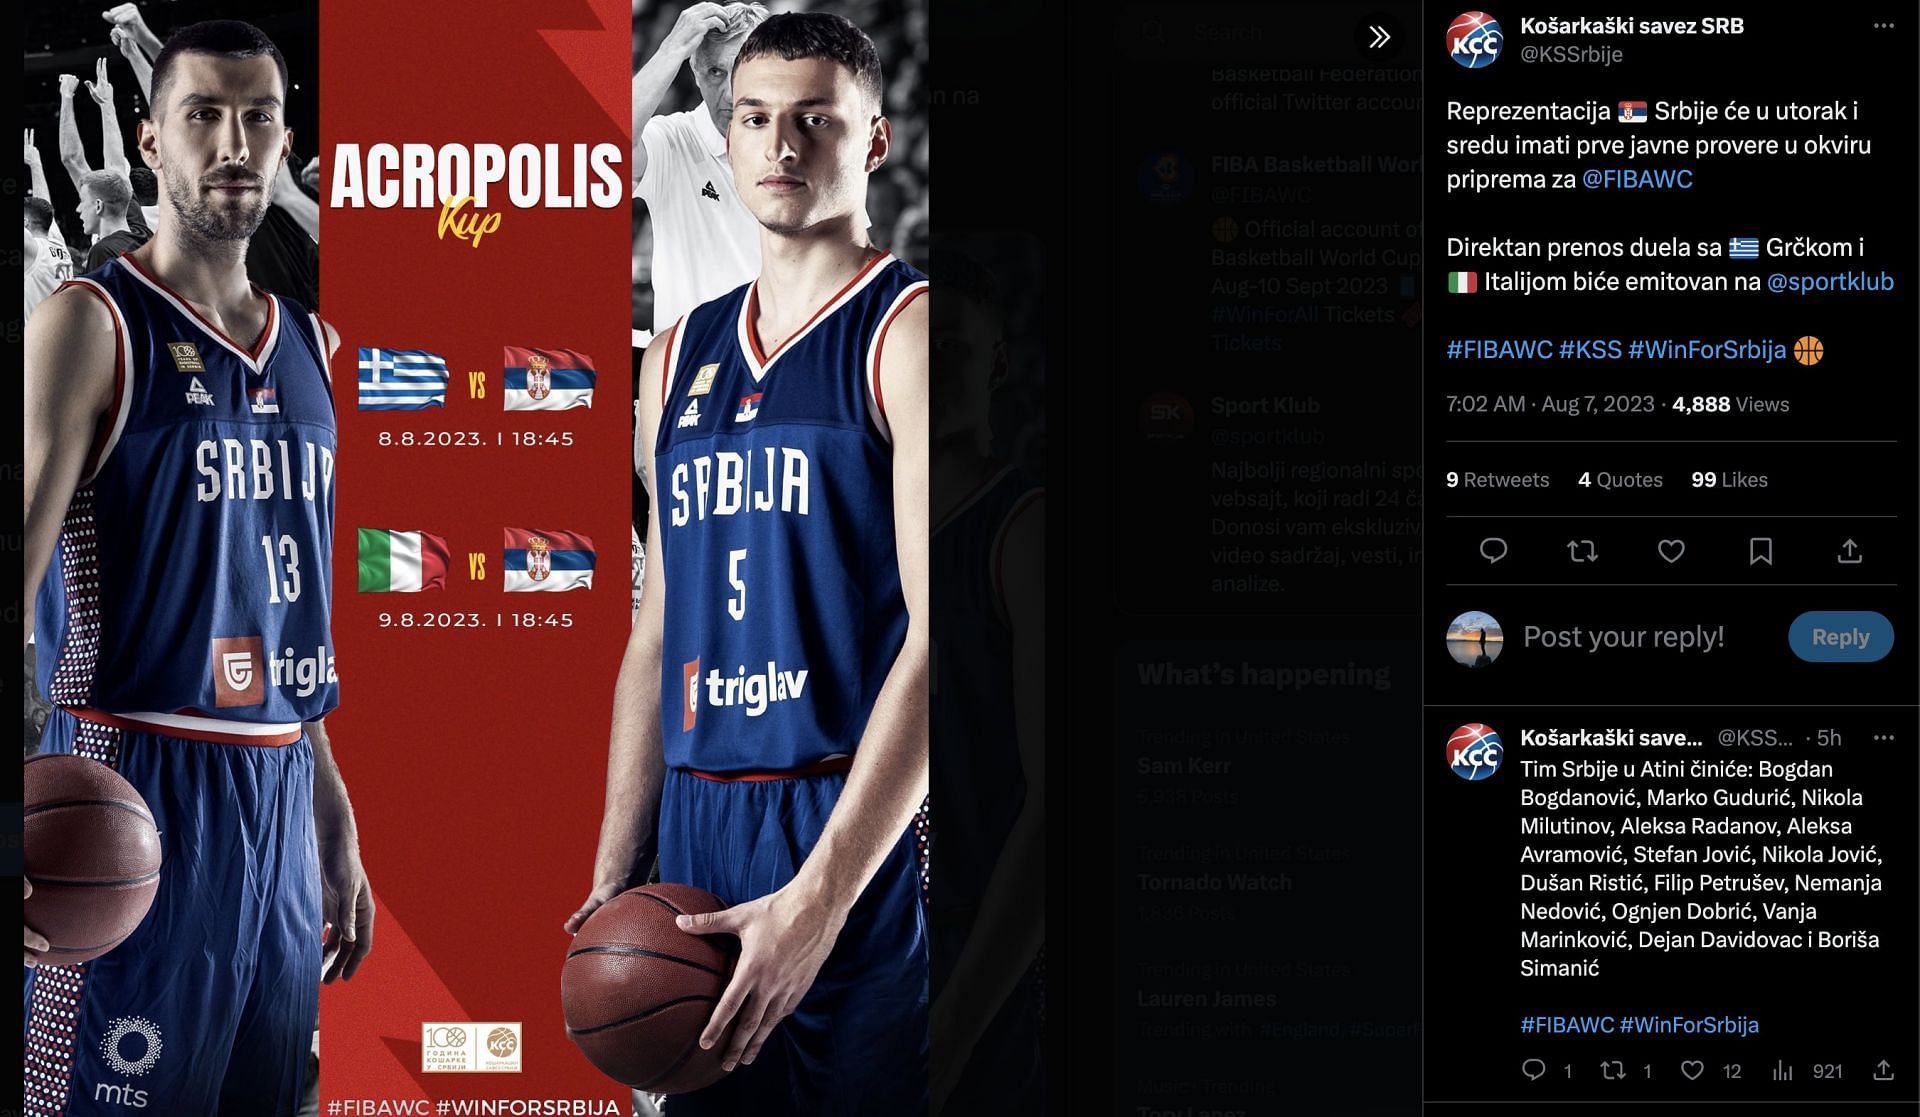 Serbia takes on Greece in the Acropolis Tournament.